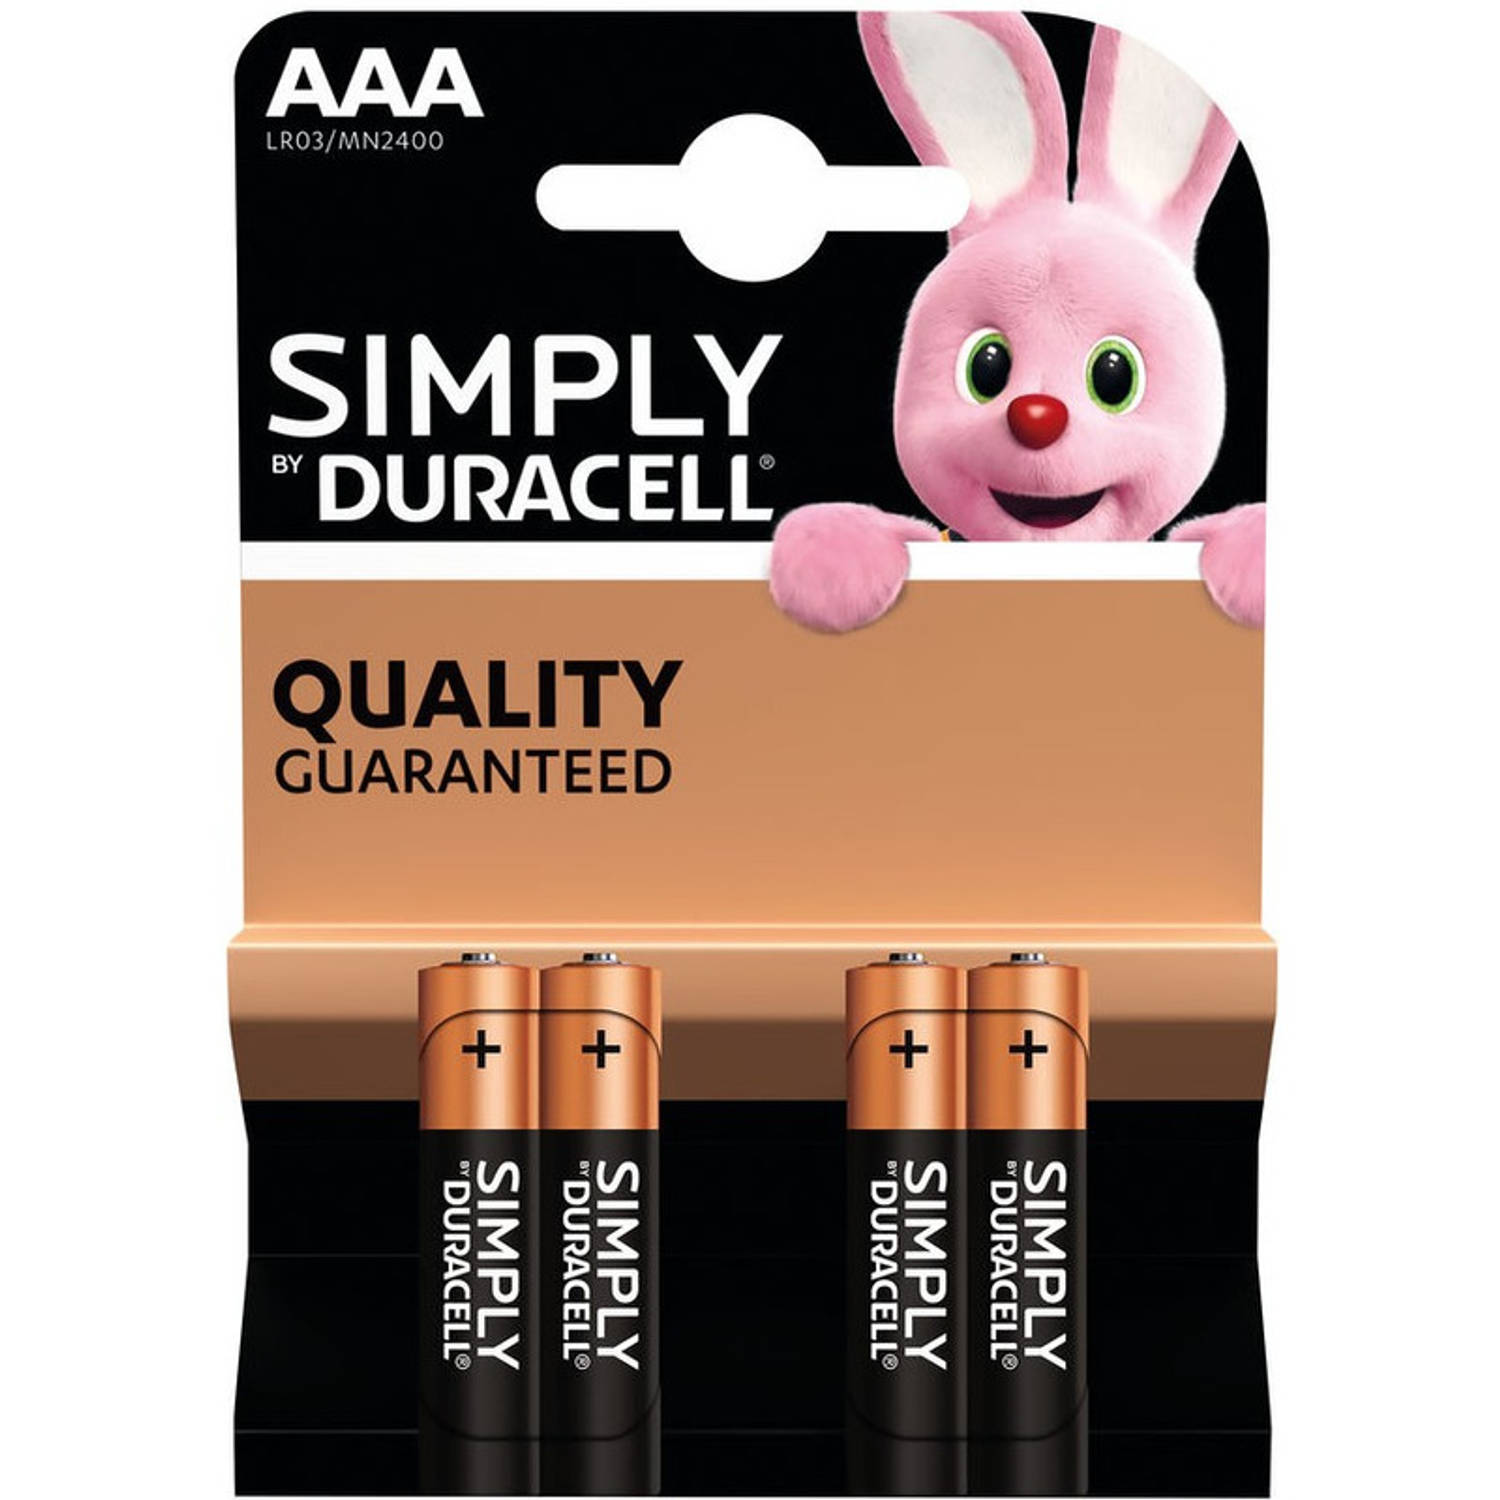 Set van 4x Duracell AAA Simply alkaline batterijen LR03 MN2400 1.5 V - Minipenlites AAA batterijen